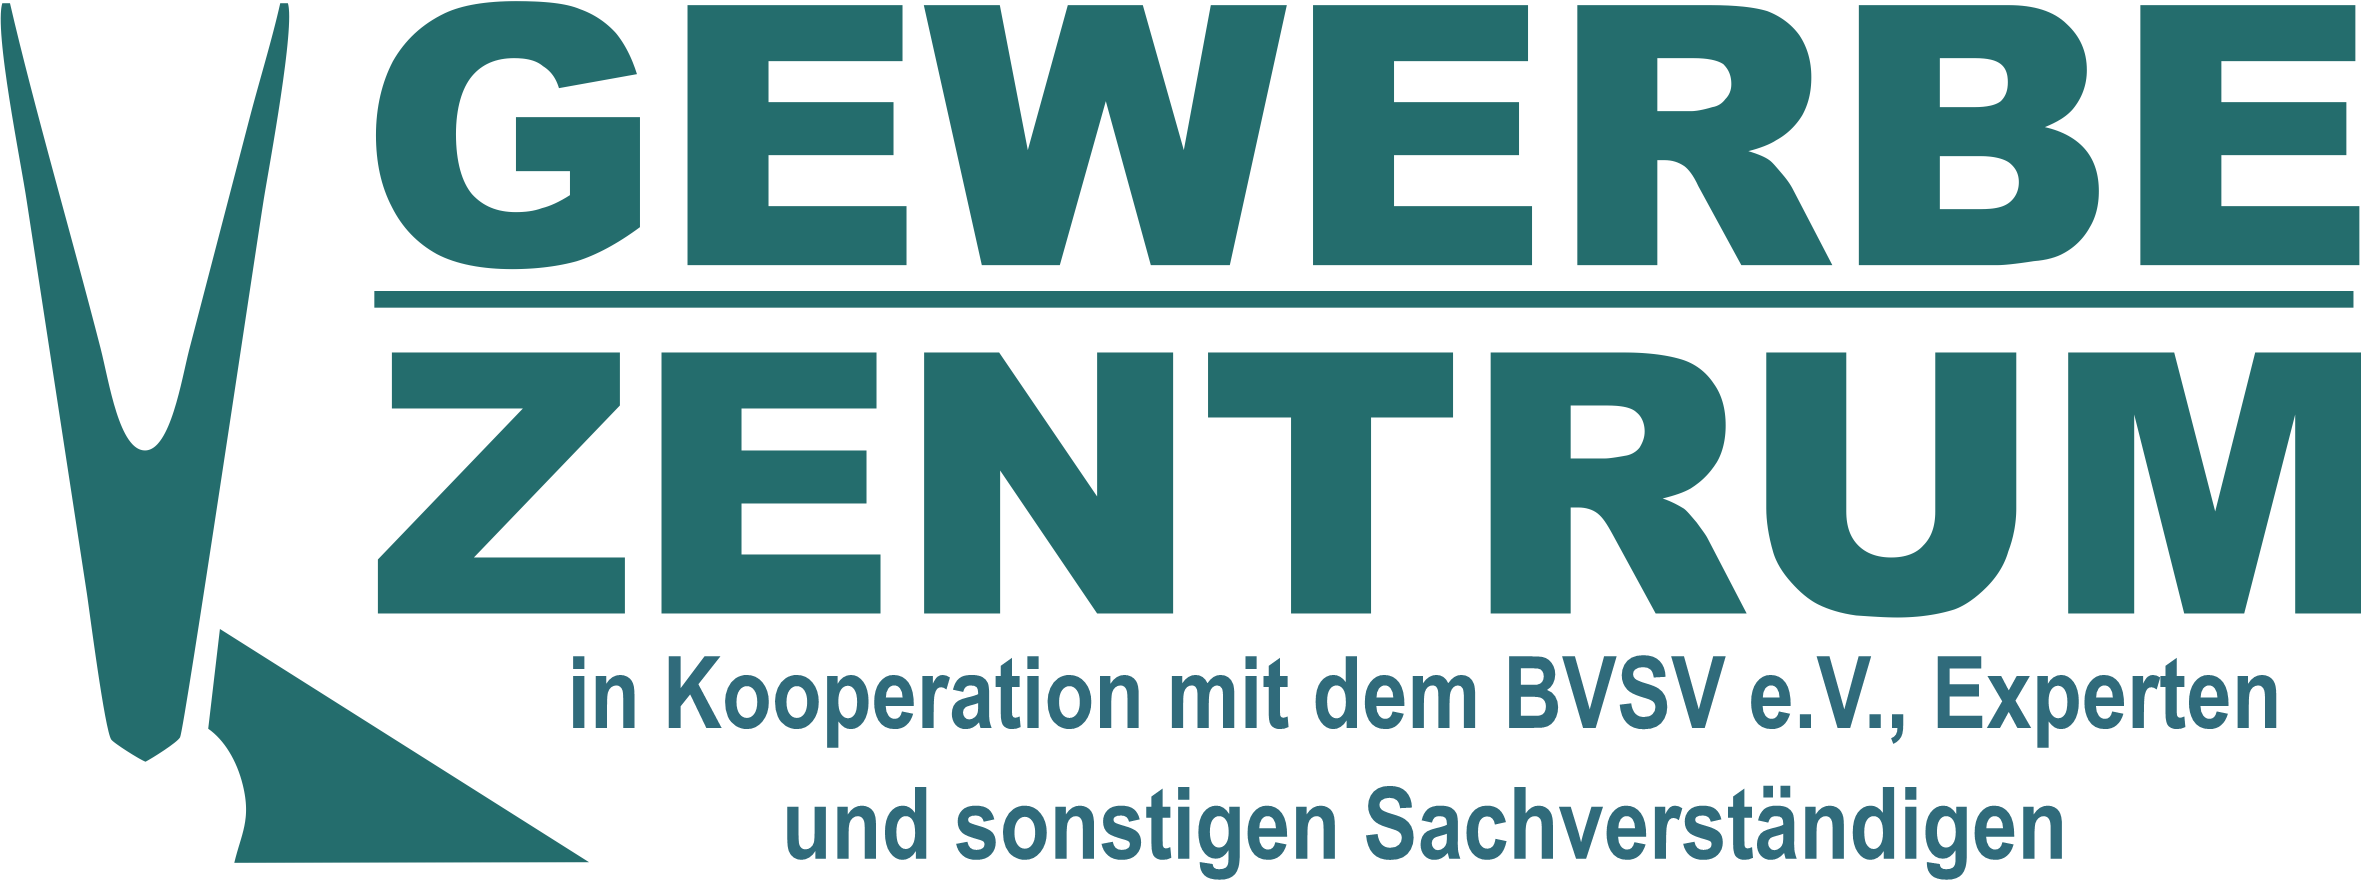 Gewerbezentrum in Kooperation mit dem BVSV e.V., Experten und sonstigen Sachverständigen